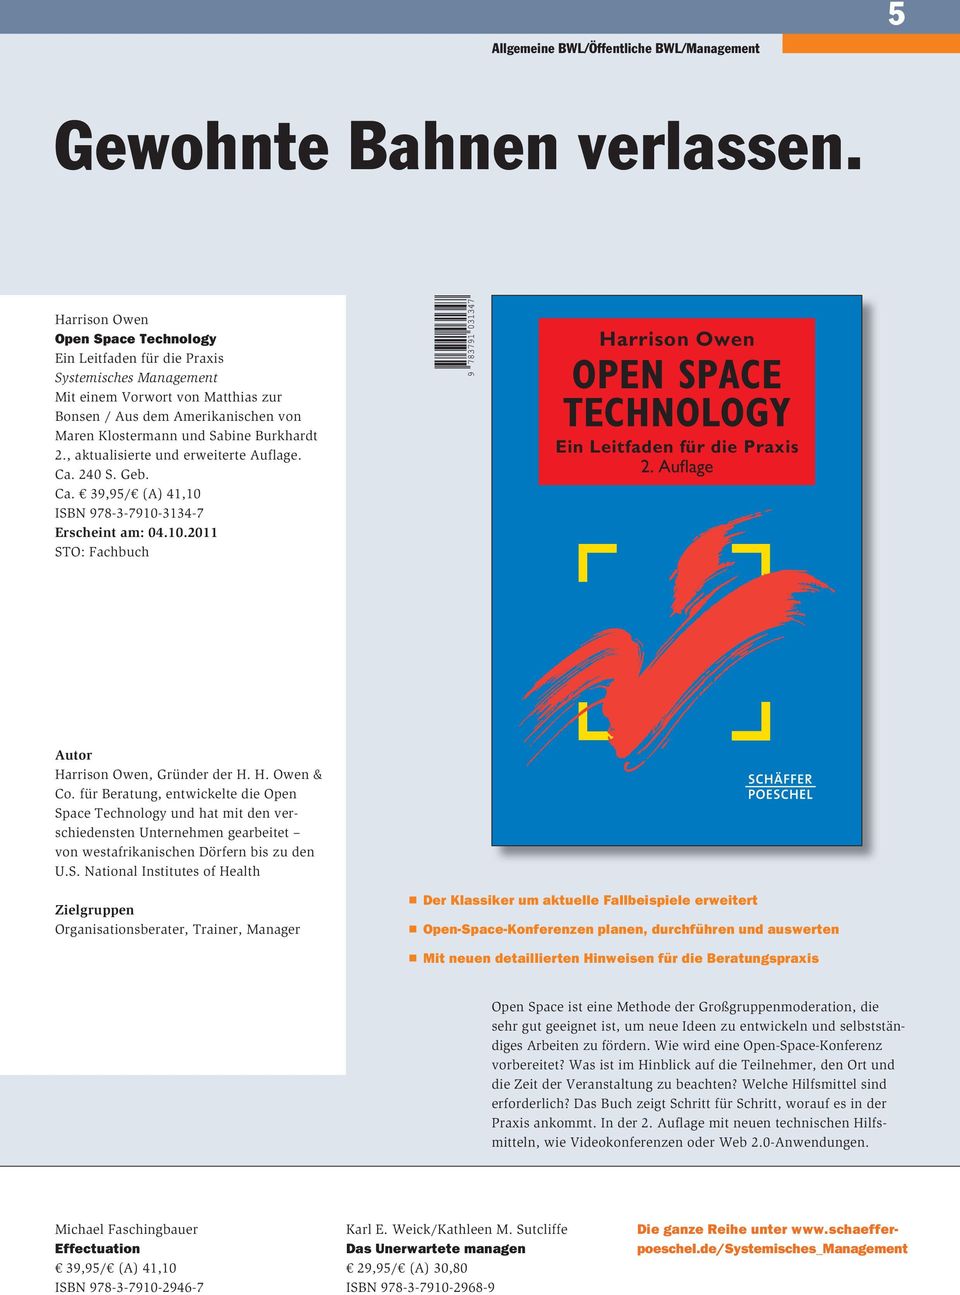 2., aktualisierte und erweiterte Auflage. Ca. 240 S. Geb. Ca. 39,95/ (A) 41,10 ISBN 978-3-7910-3134-7 Erscheint am: 04.10.2011 Harrison Owen Open Space TechnOlOgy Ein Leitfaden für die Praxis 2.